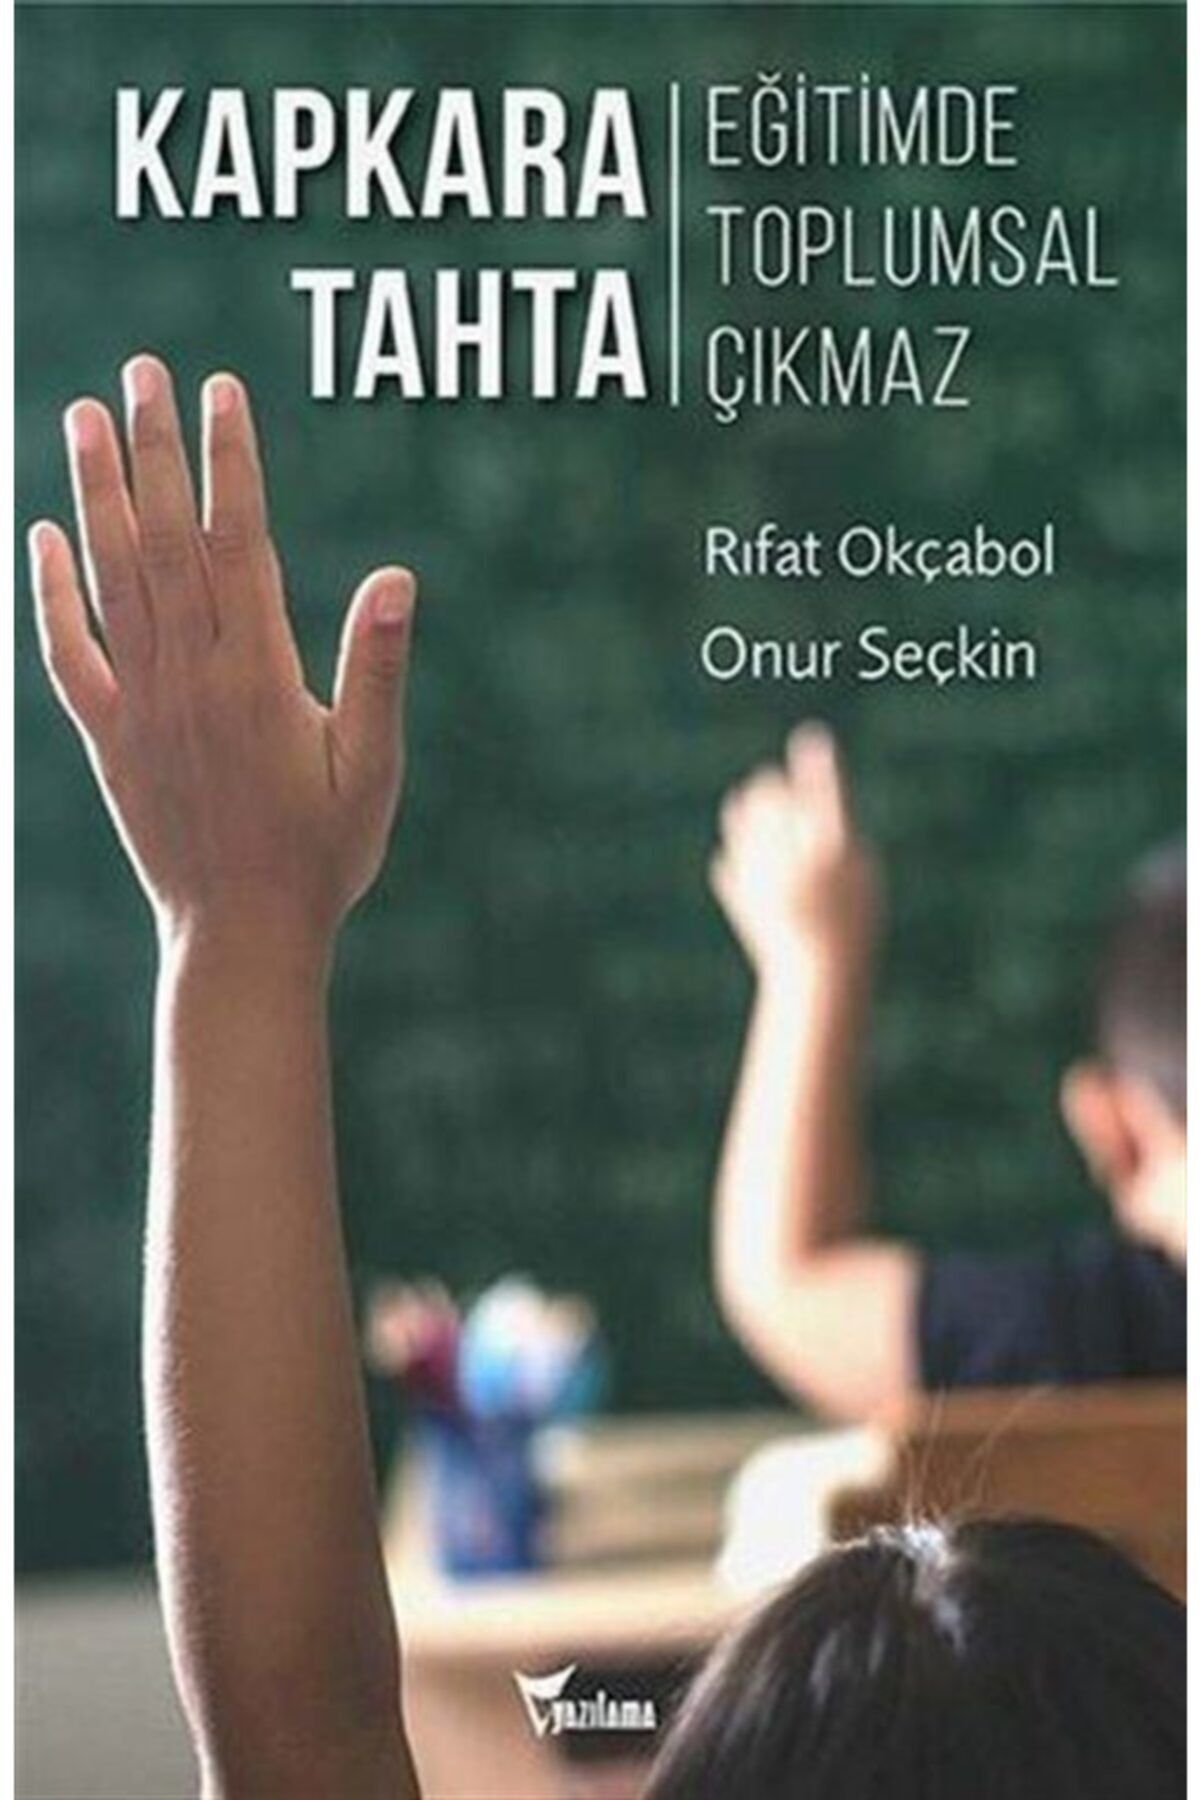 Romans Kapkara Tahta - Eğitimde Toplumsal Çıkmaz